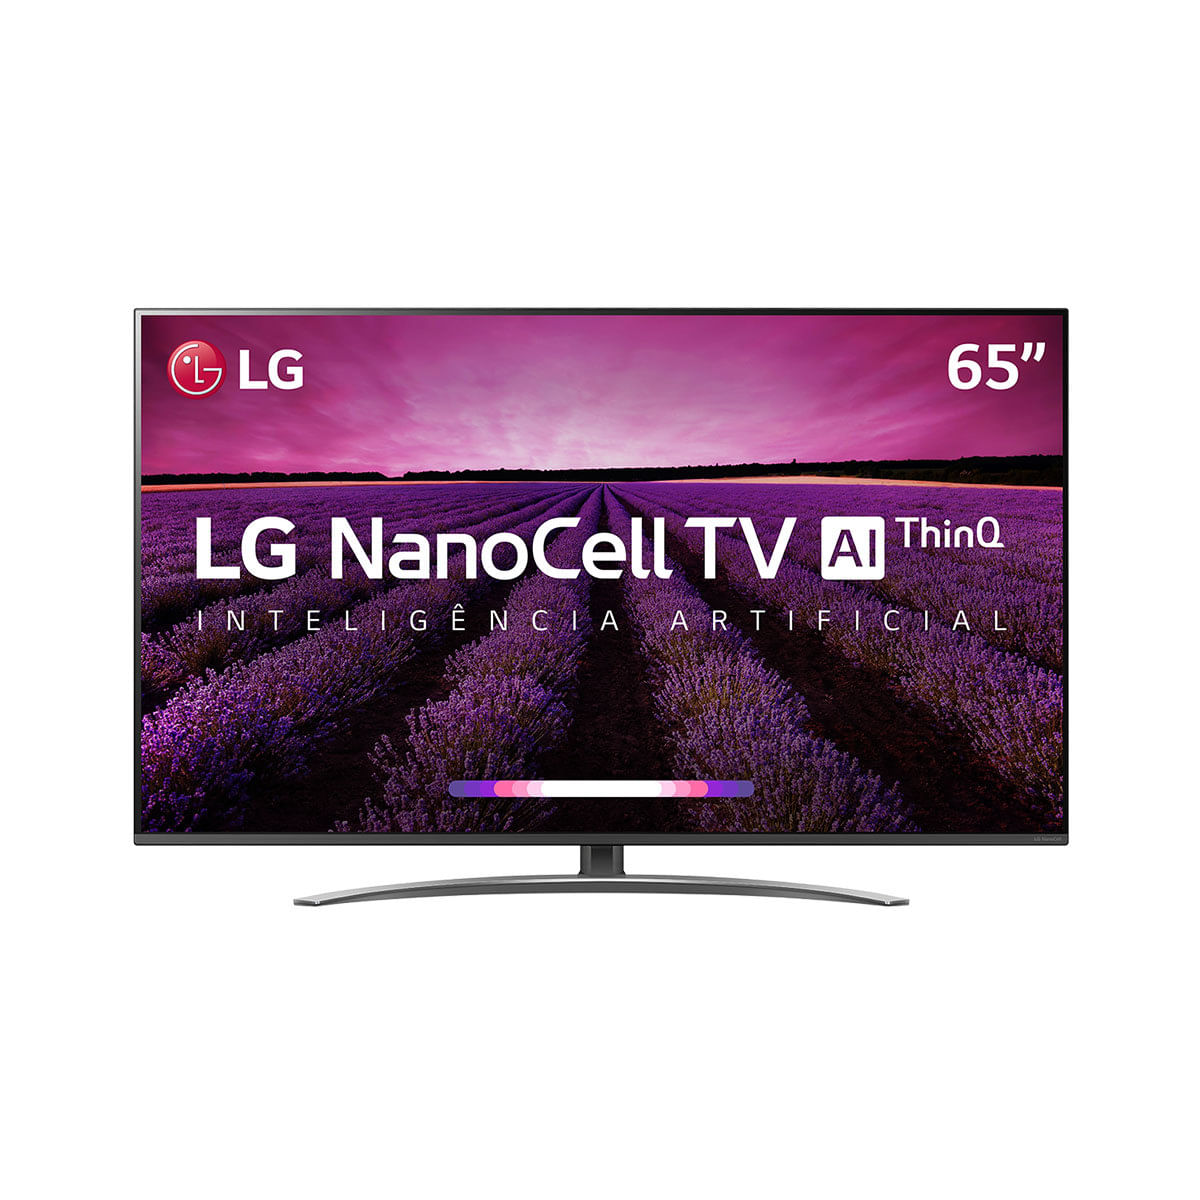 Menor preço em Smart TV LED 65" LG SM8100 NanoCell 4K, IPS, HDR com Google Assistente, WebOS 4.5, Inteligência Artificial